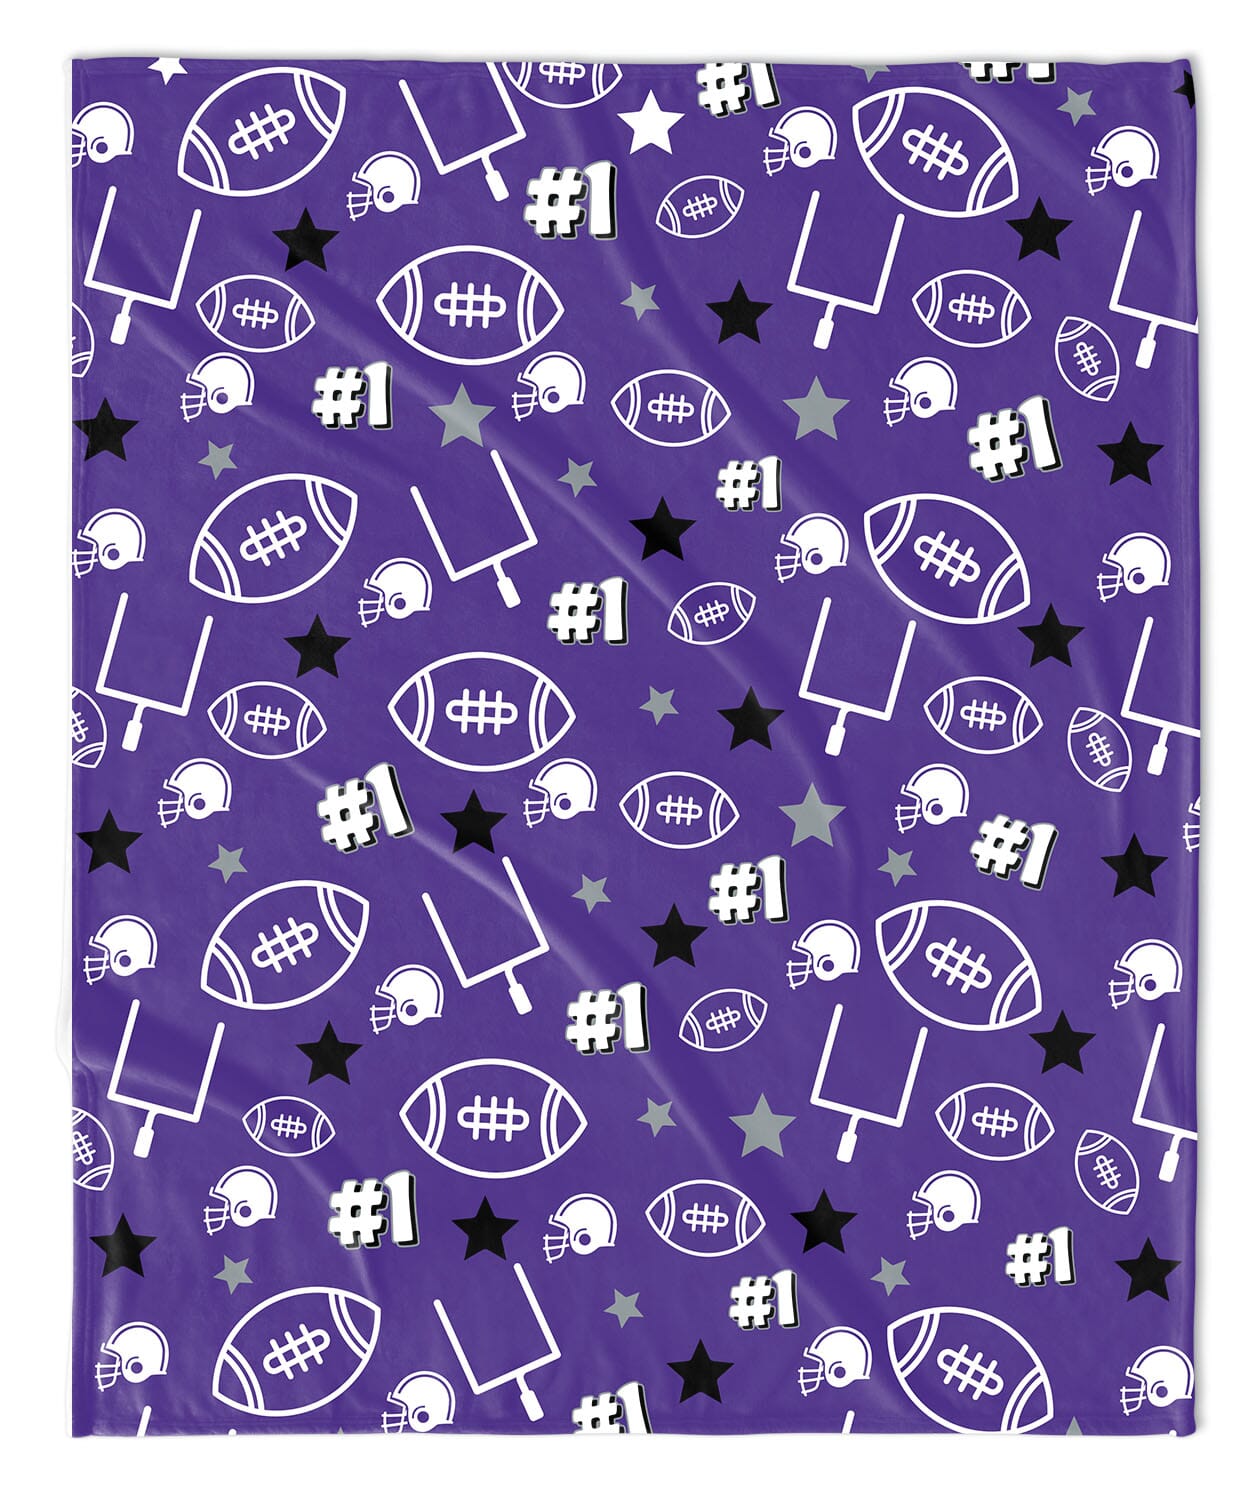 Purple KSU Football Blanket